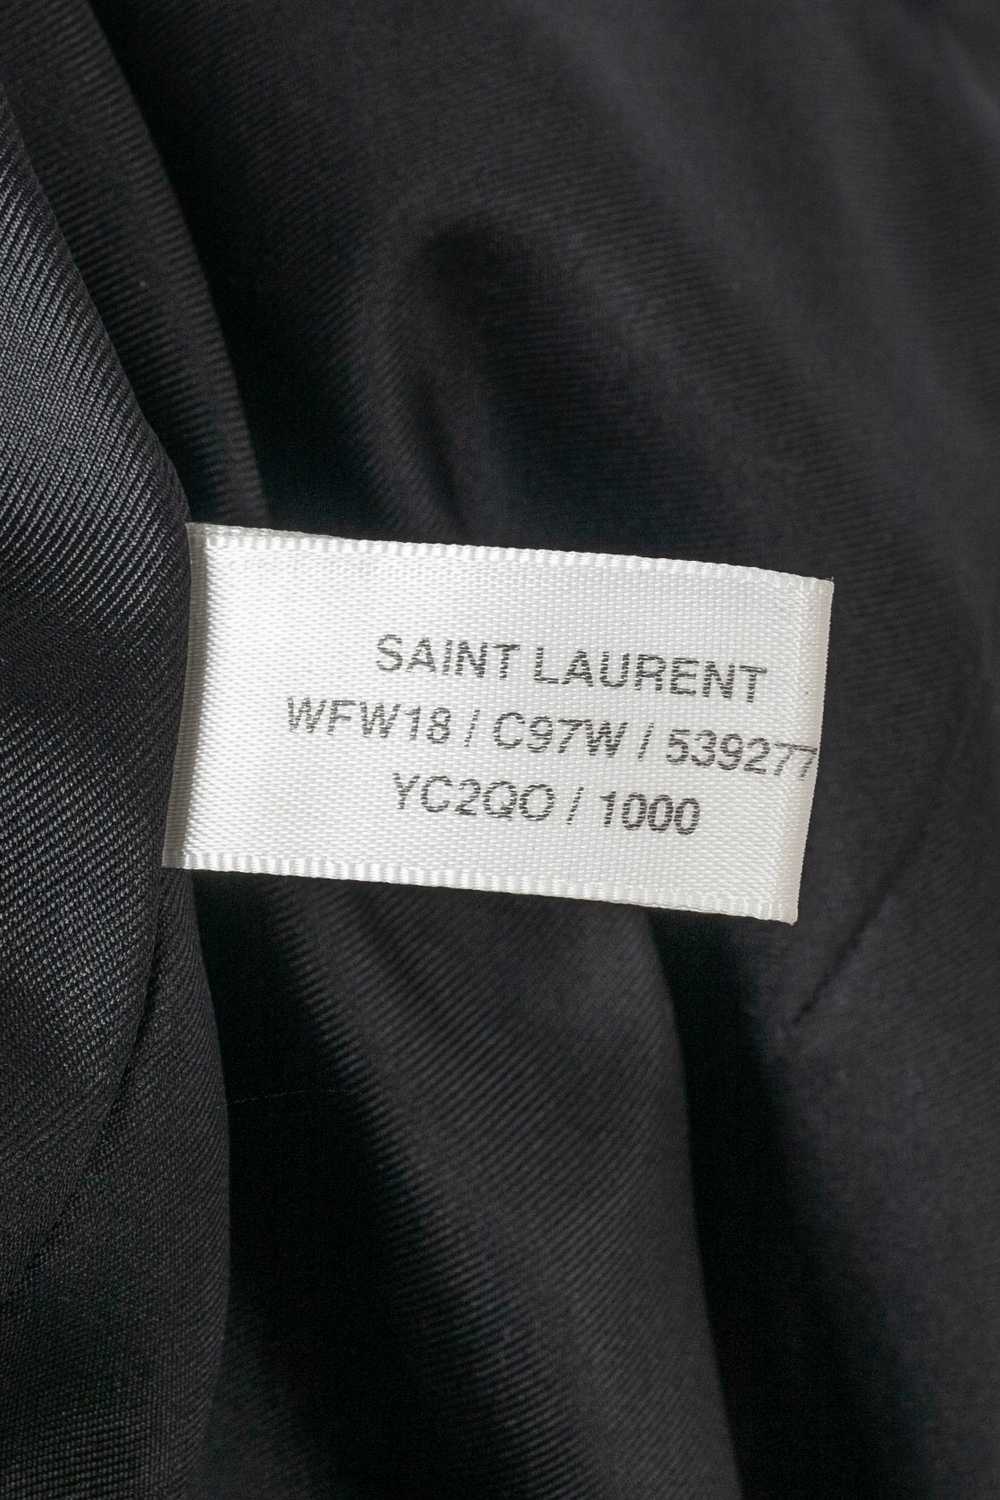 Saint Laurent skirt Fall 2018 - image 10